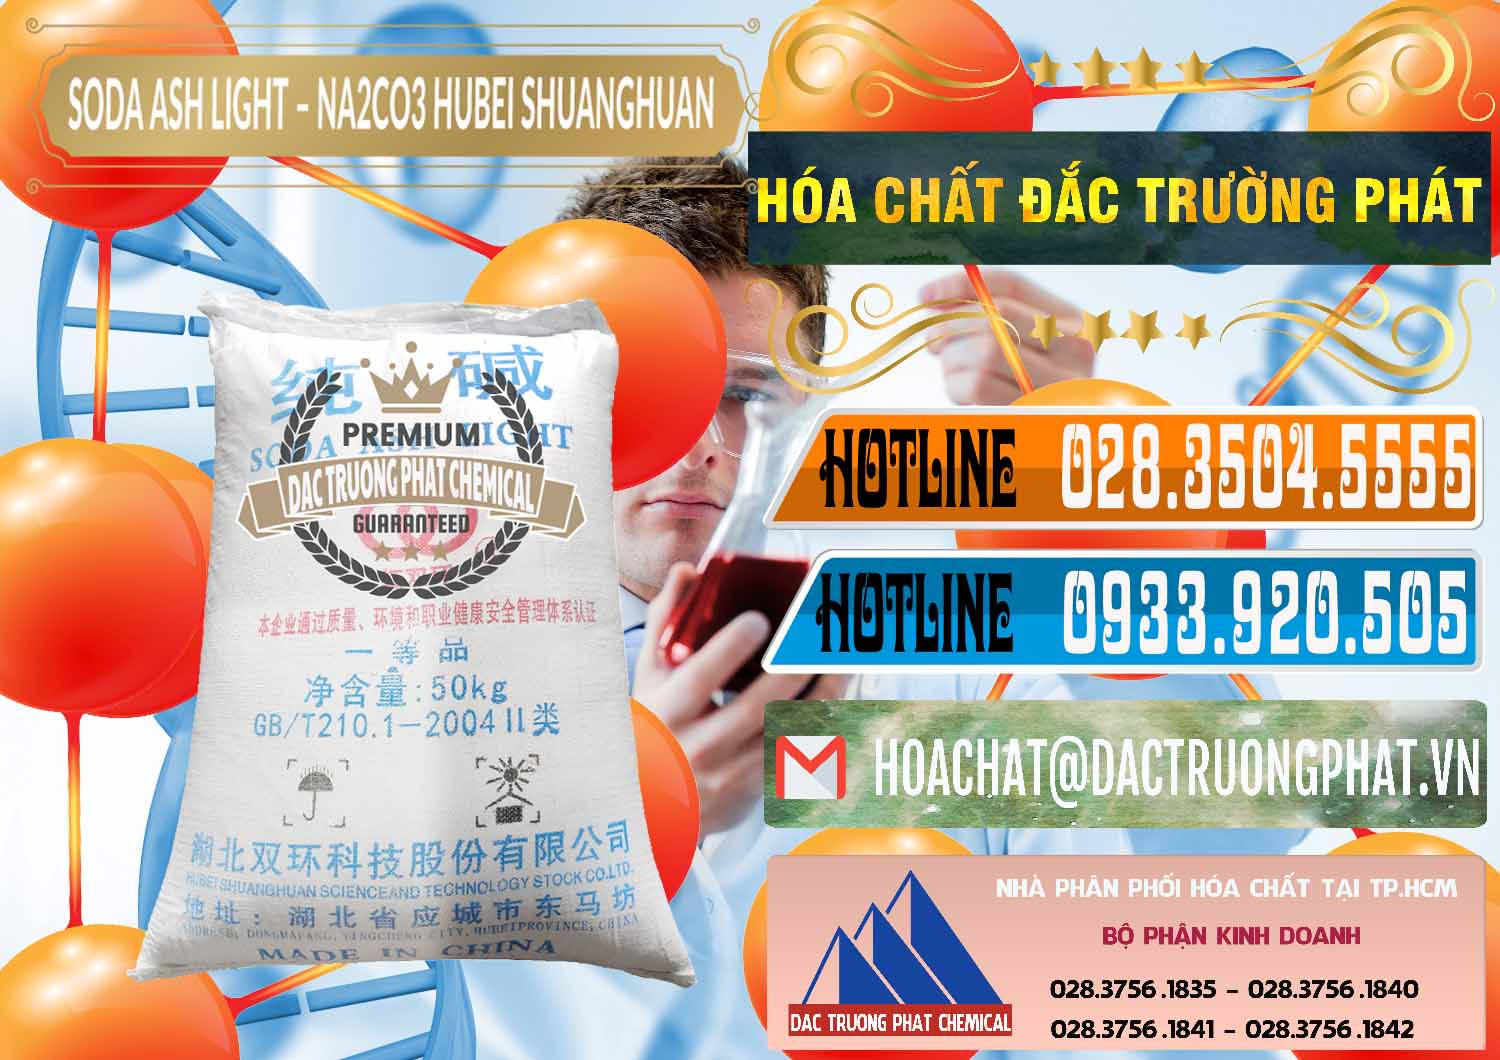 Nơi cung cấp - bán Soda Ash Light - NA2CO3 2 Vòng Tròn Hubei Shuanghuan Trung Quốc China - 0130 - Cty chuyên nhập khẩu _ phân phối hóa chất tại TP.HCM - stmp.net